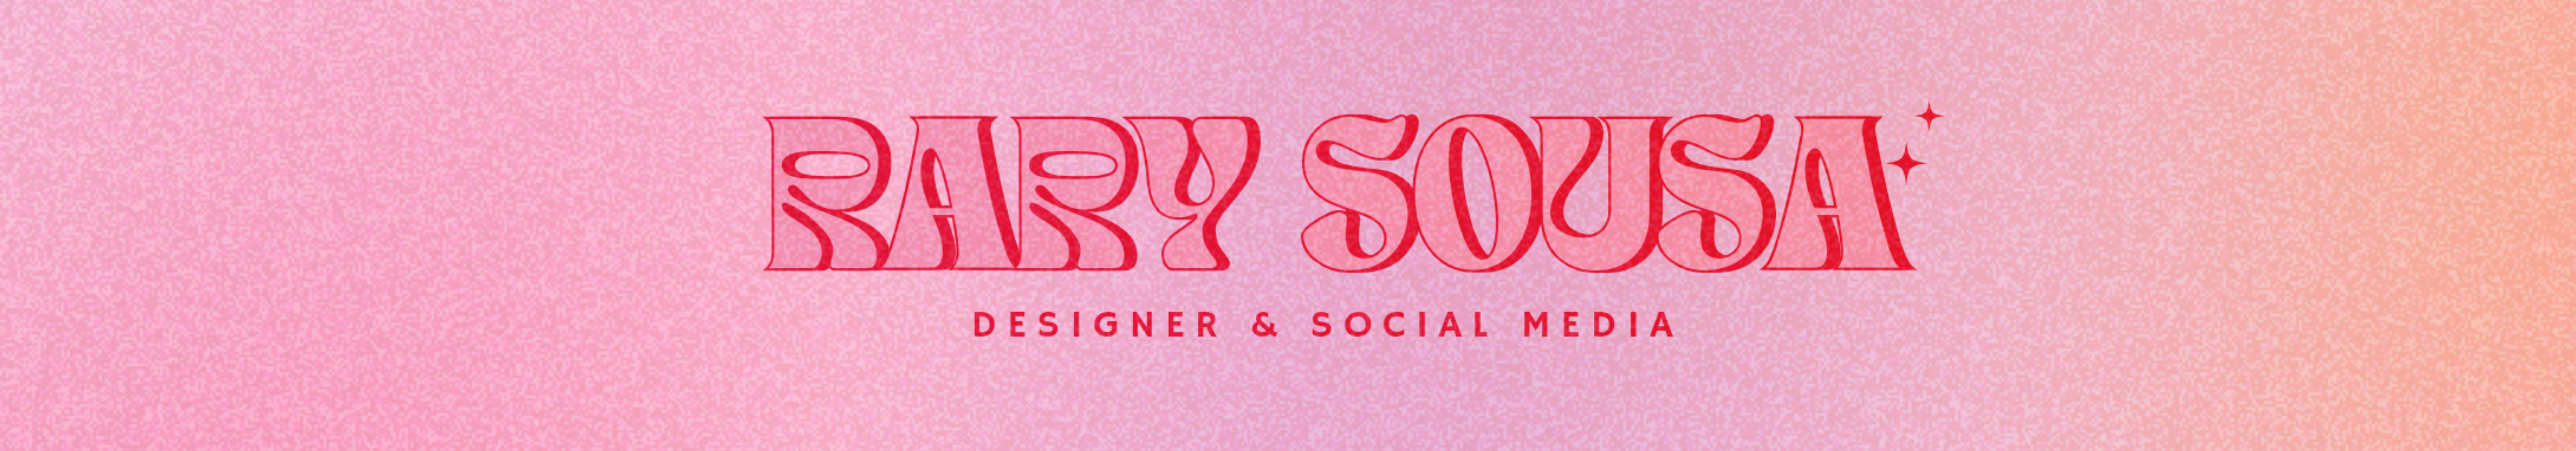 Rary Sousa's profile banner